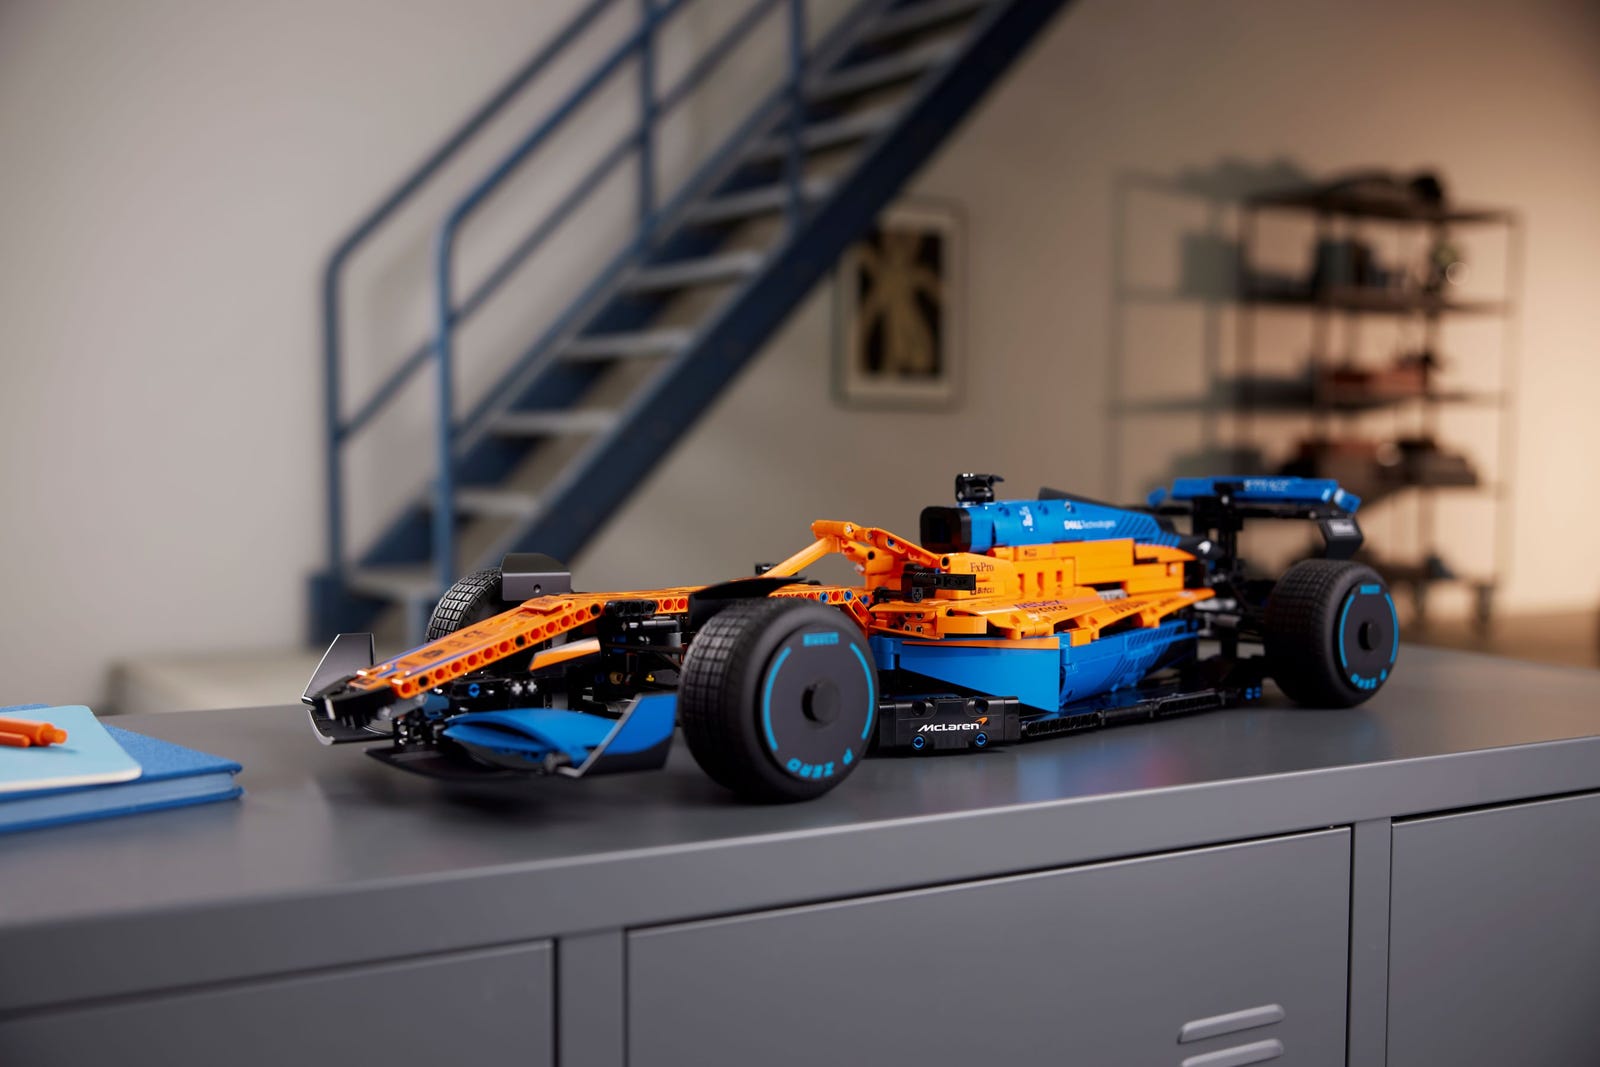 Lego McLaren Formule 1 15